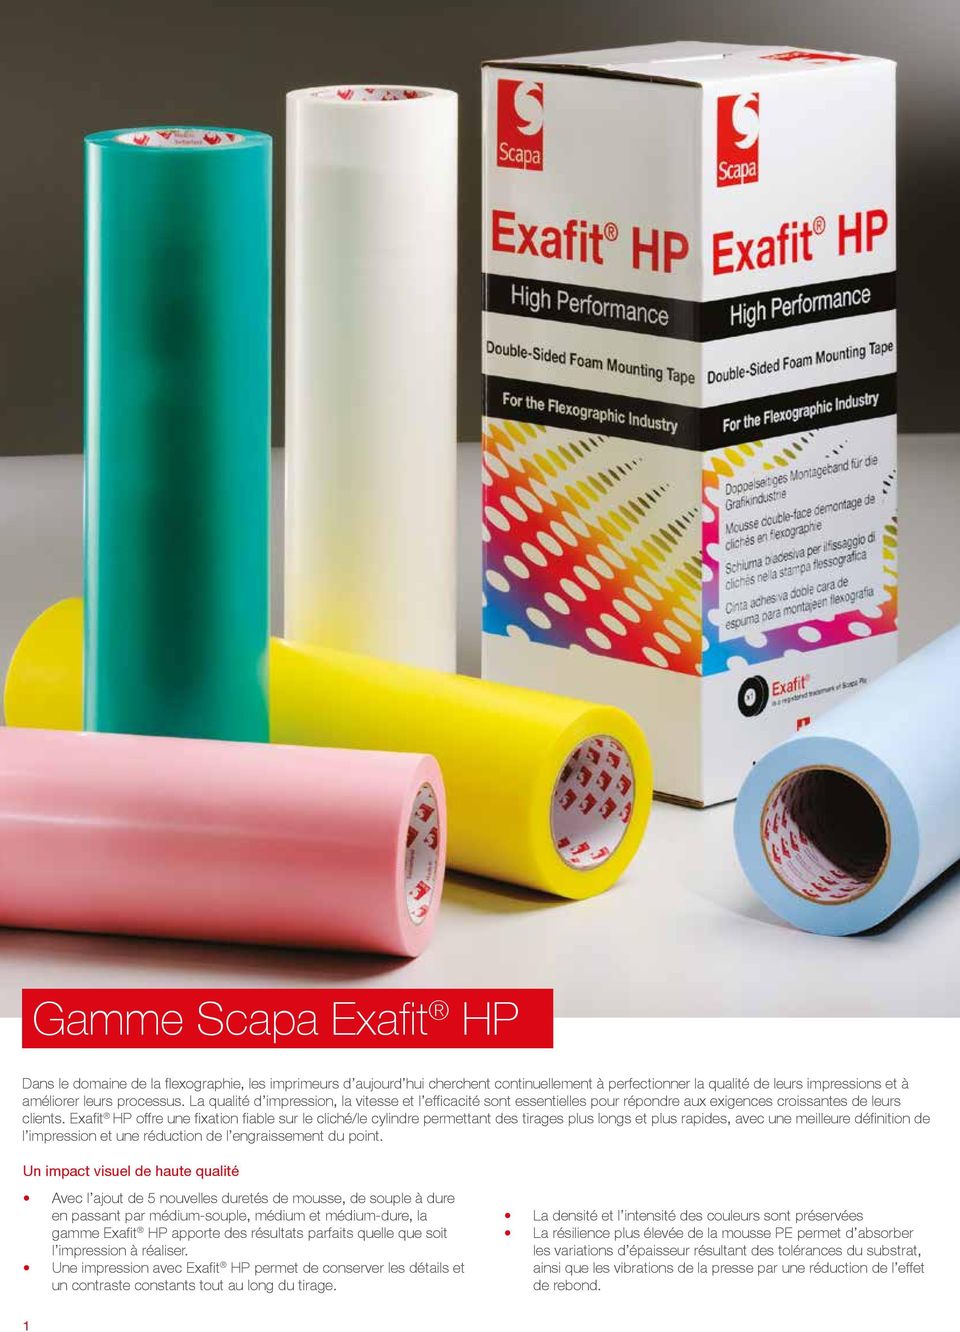 Exafit HP offre une fixation fiable sur le cliché/le cylindre permettant des tirages plus longs et plus rapides, avec une meilleure définition de l impression et une réduction de l engraissement du